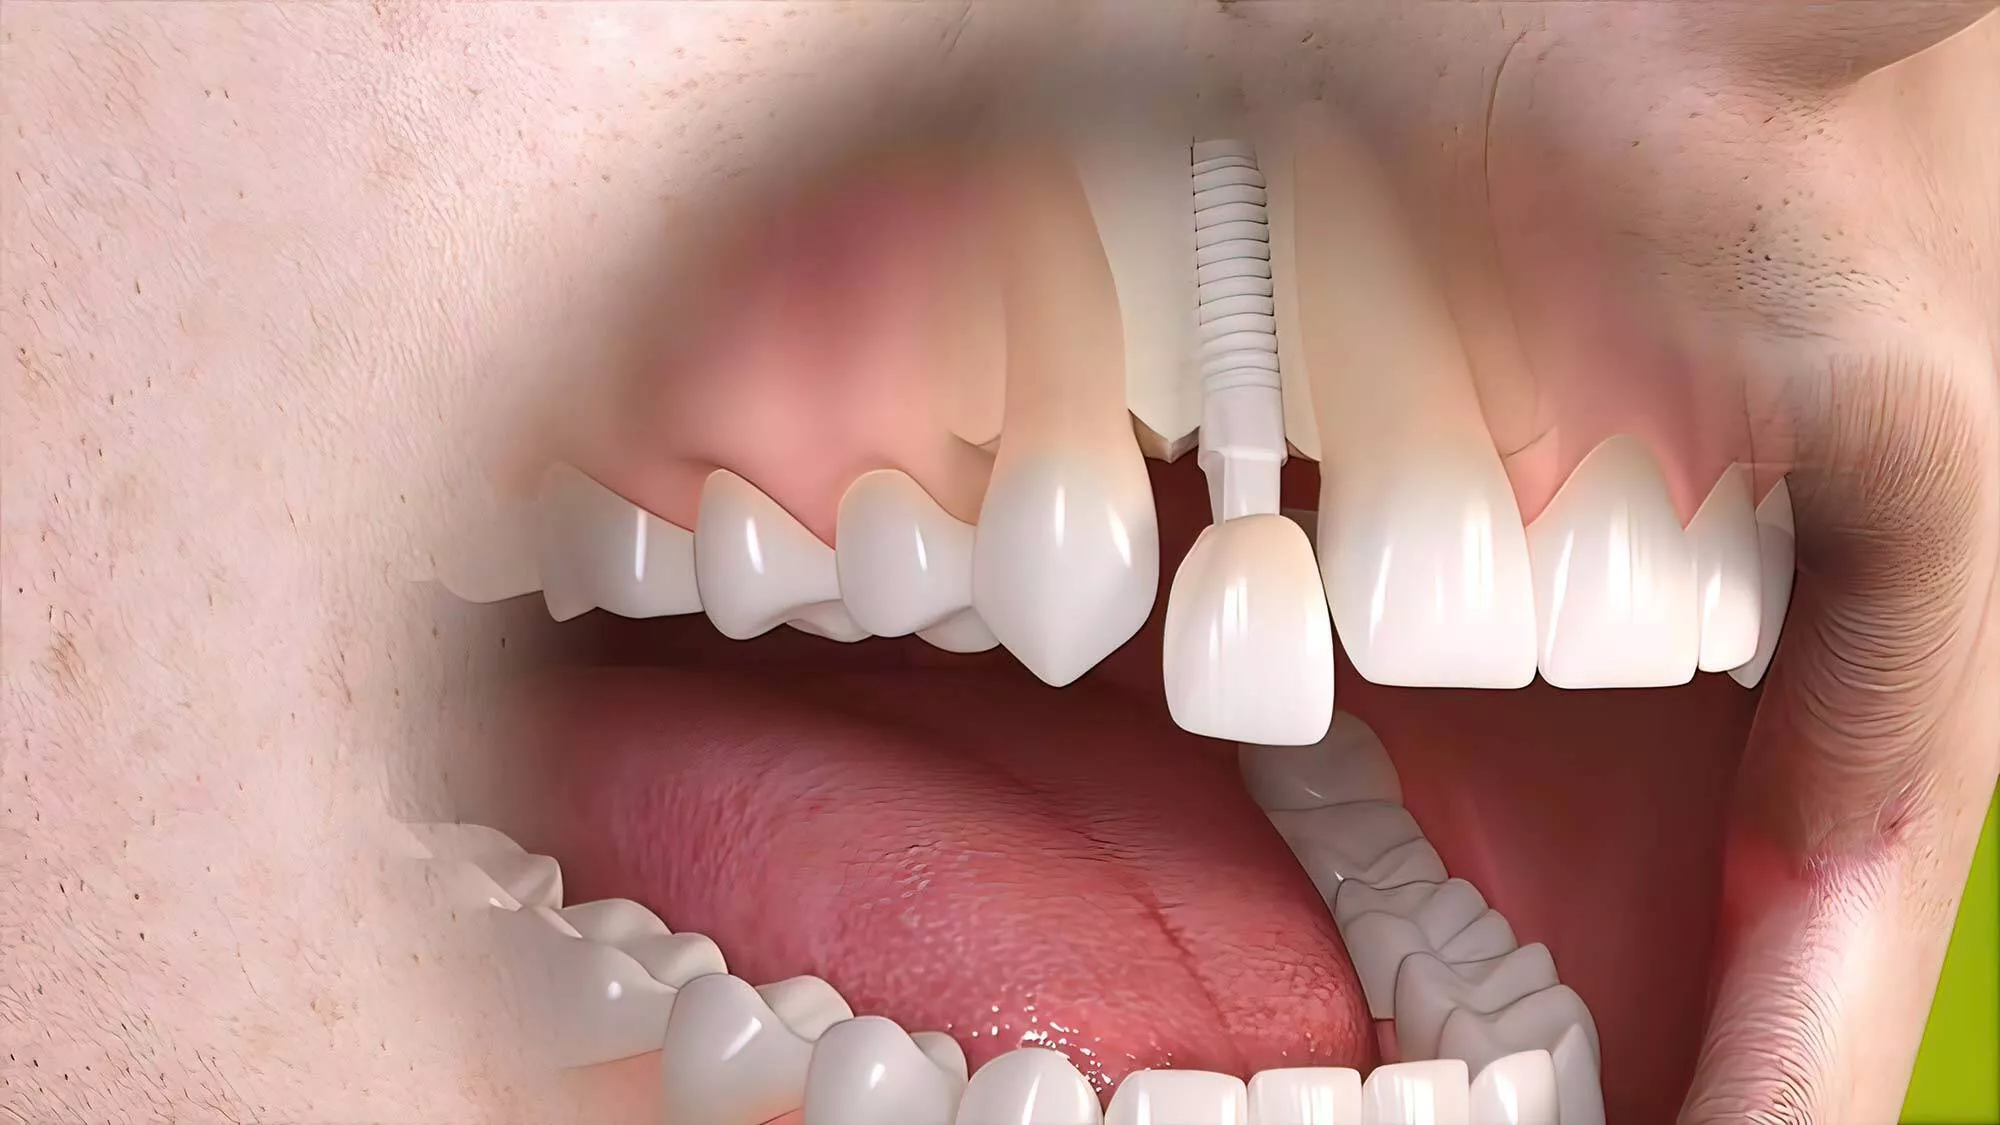 Bridge dentaire vs implant quelles différences